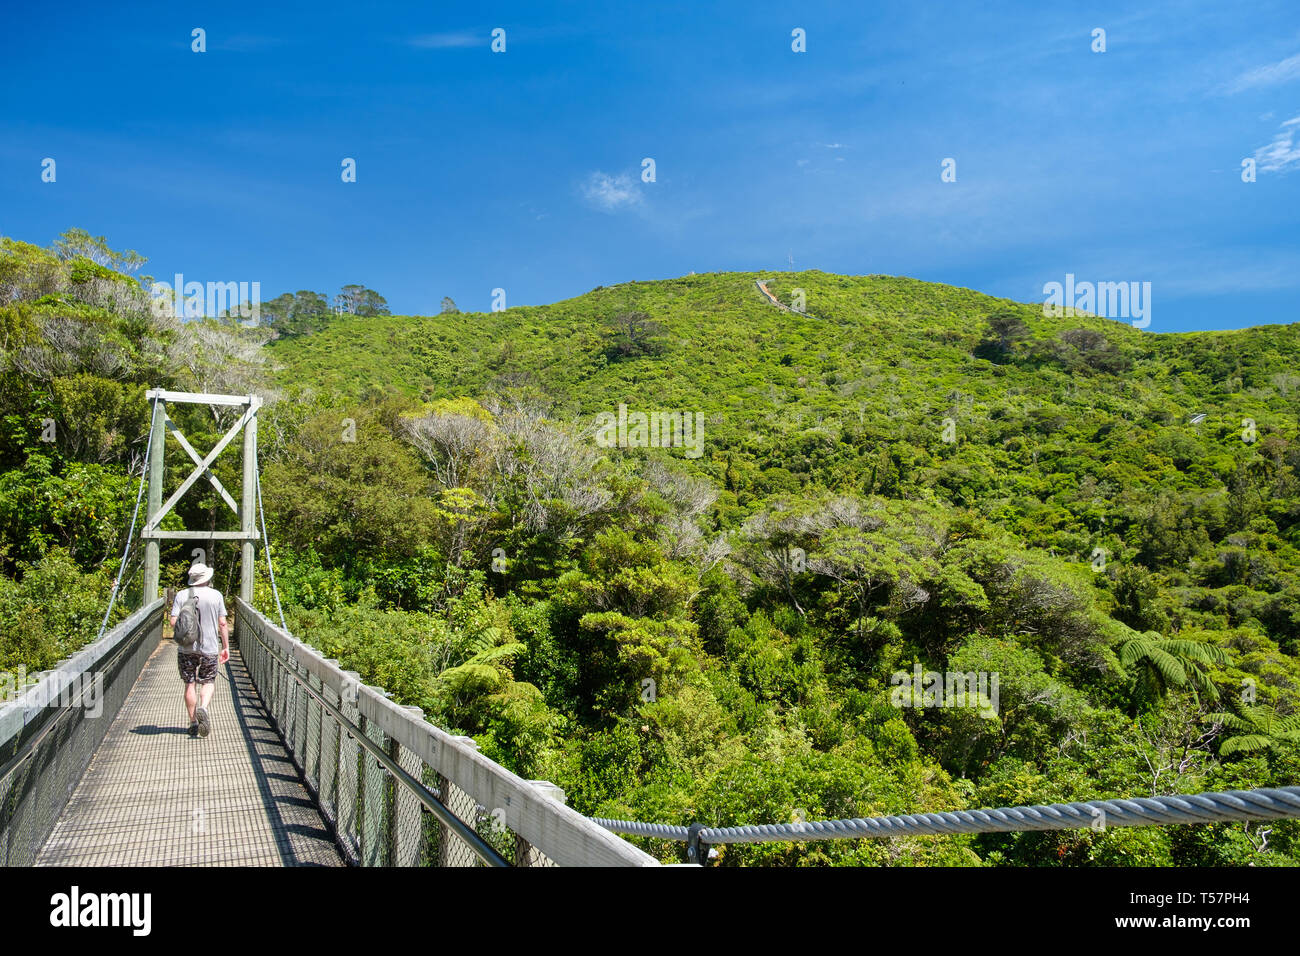 Schwingende Brücke und Predator Zaun in Zealandia, ein naturschutzprojekt und Attraktion ist der weltweit erste komplett eingezäunt Urban ecosanctuary, Welling Stockfoto